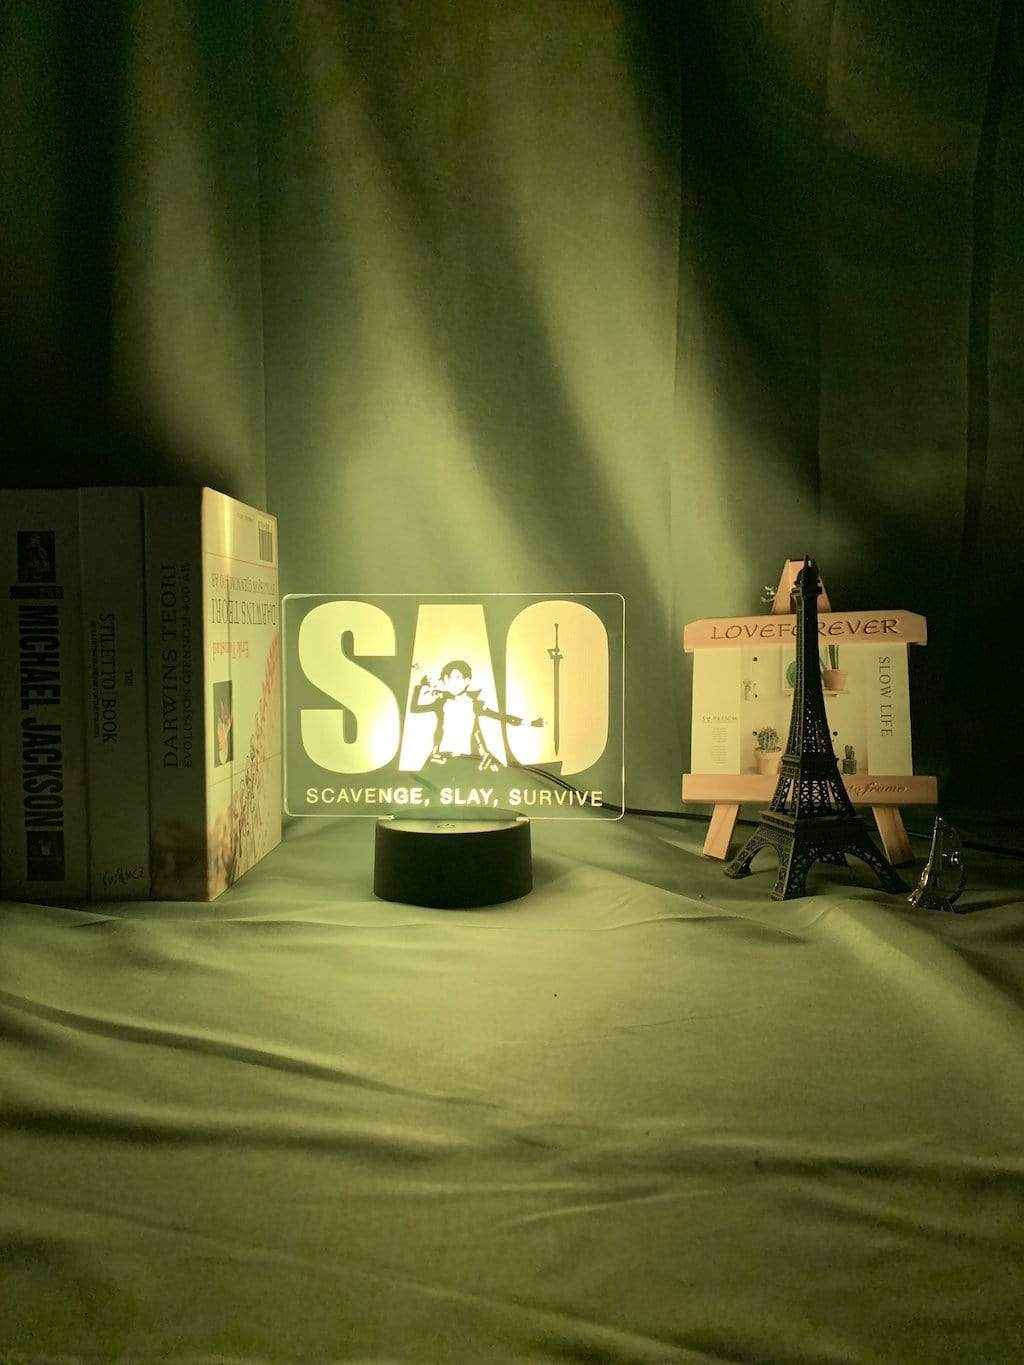 Lampe Sword Art Online Logo Led Night Light for Kid Bedroom Decor lampe led 3D